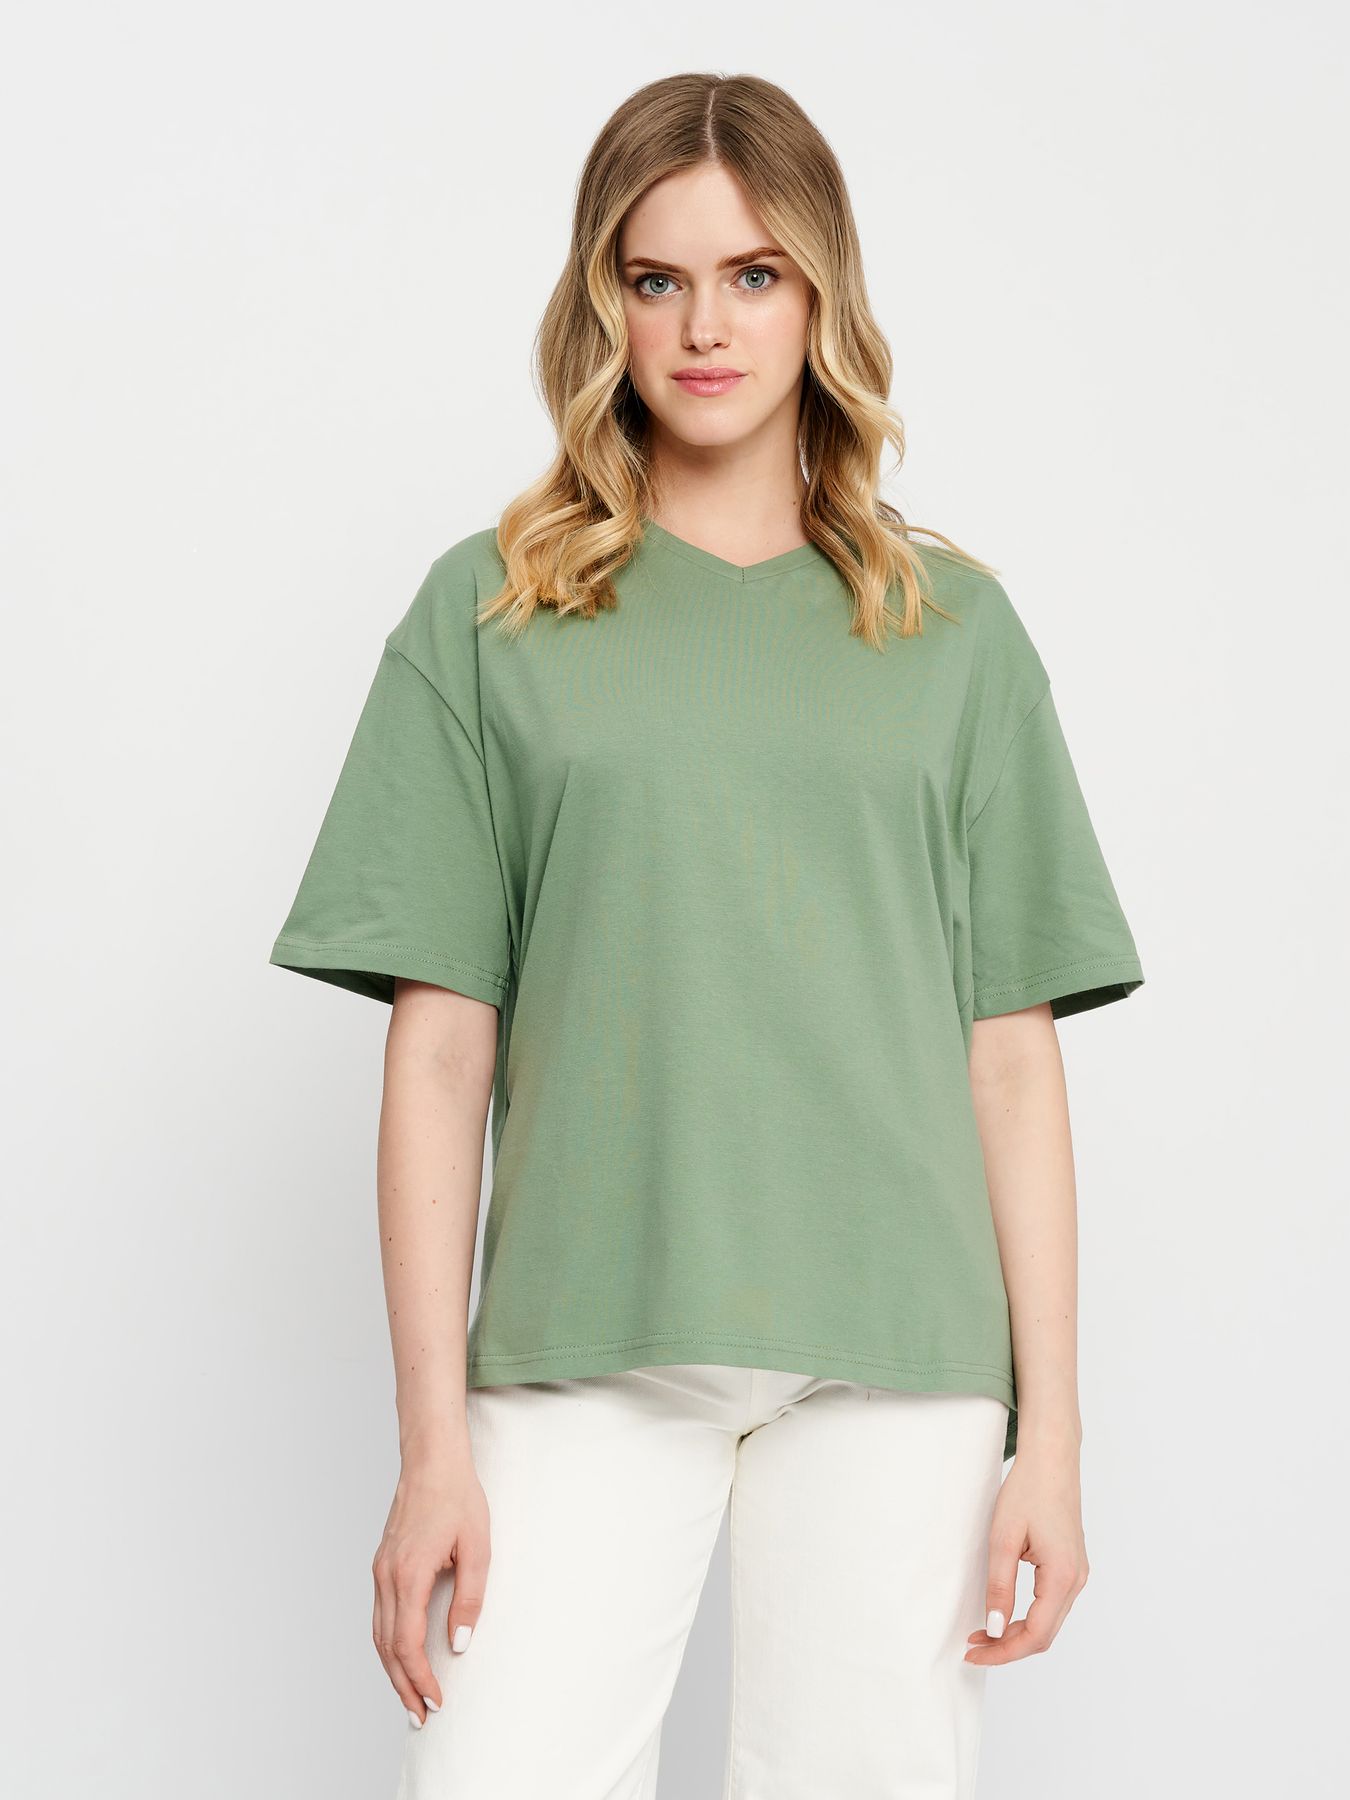 Трикотажные женские футболки - купить по лучшей цене в интернет-магазине FINN FLARE